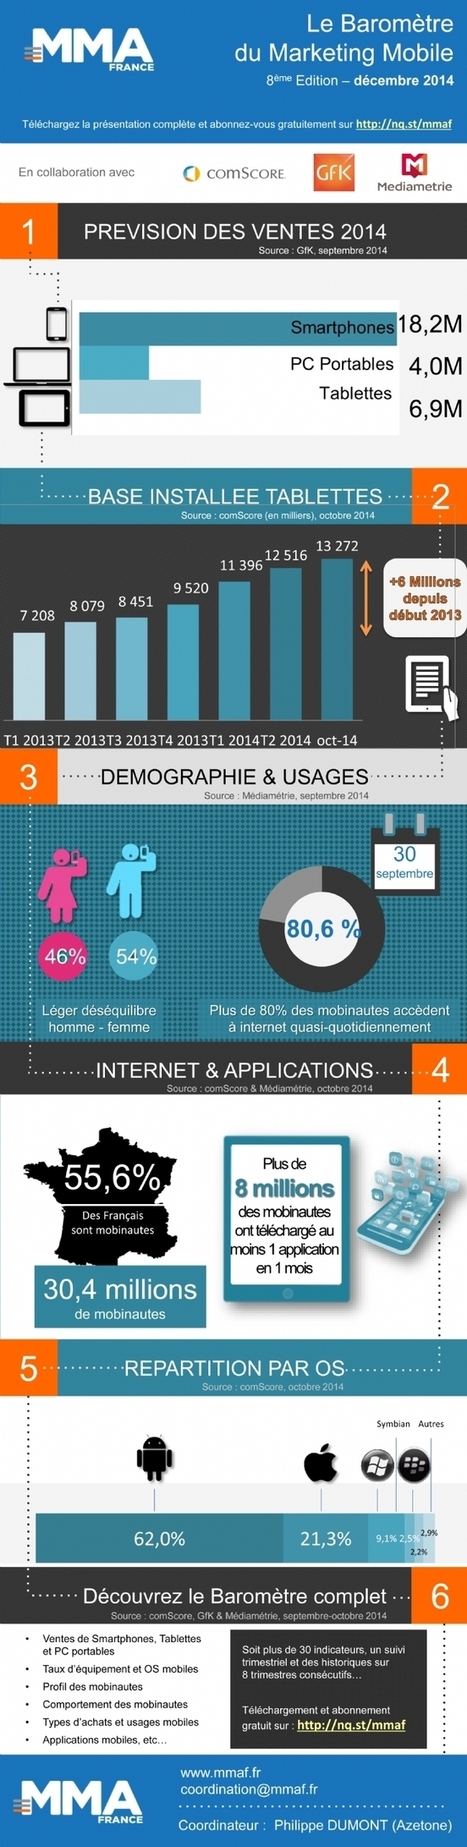 Le mobile, désormais un média de masse | Digital infographics | Scoop.it